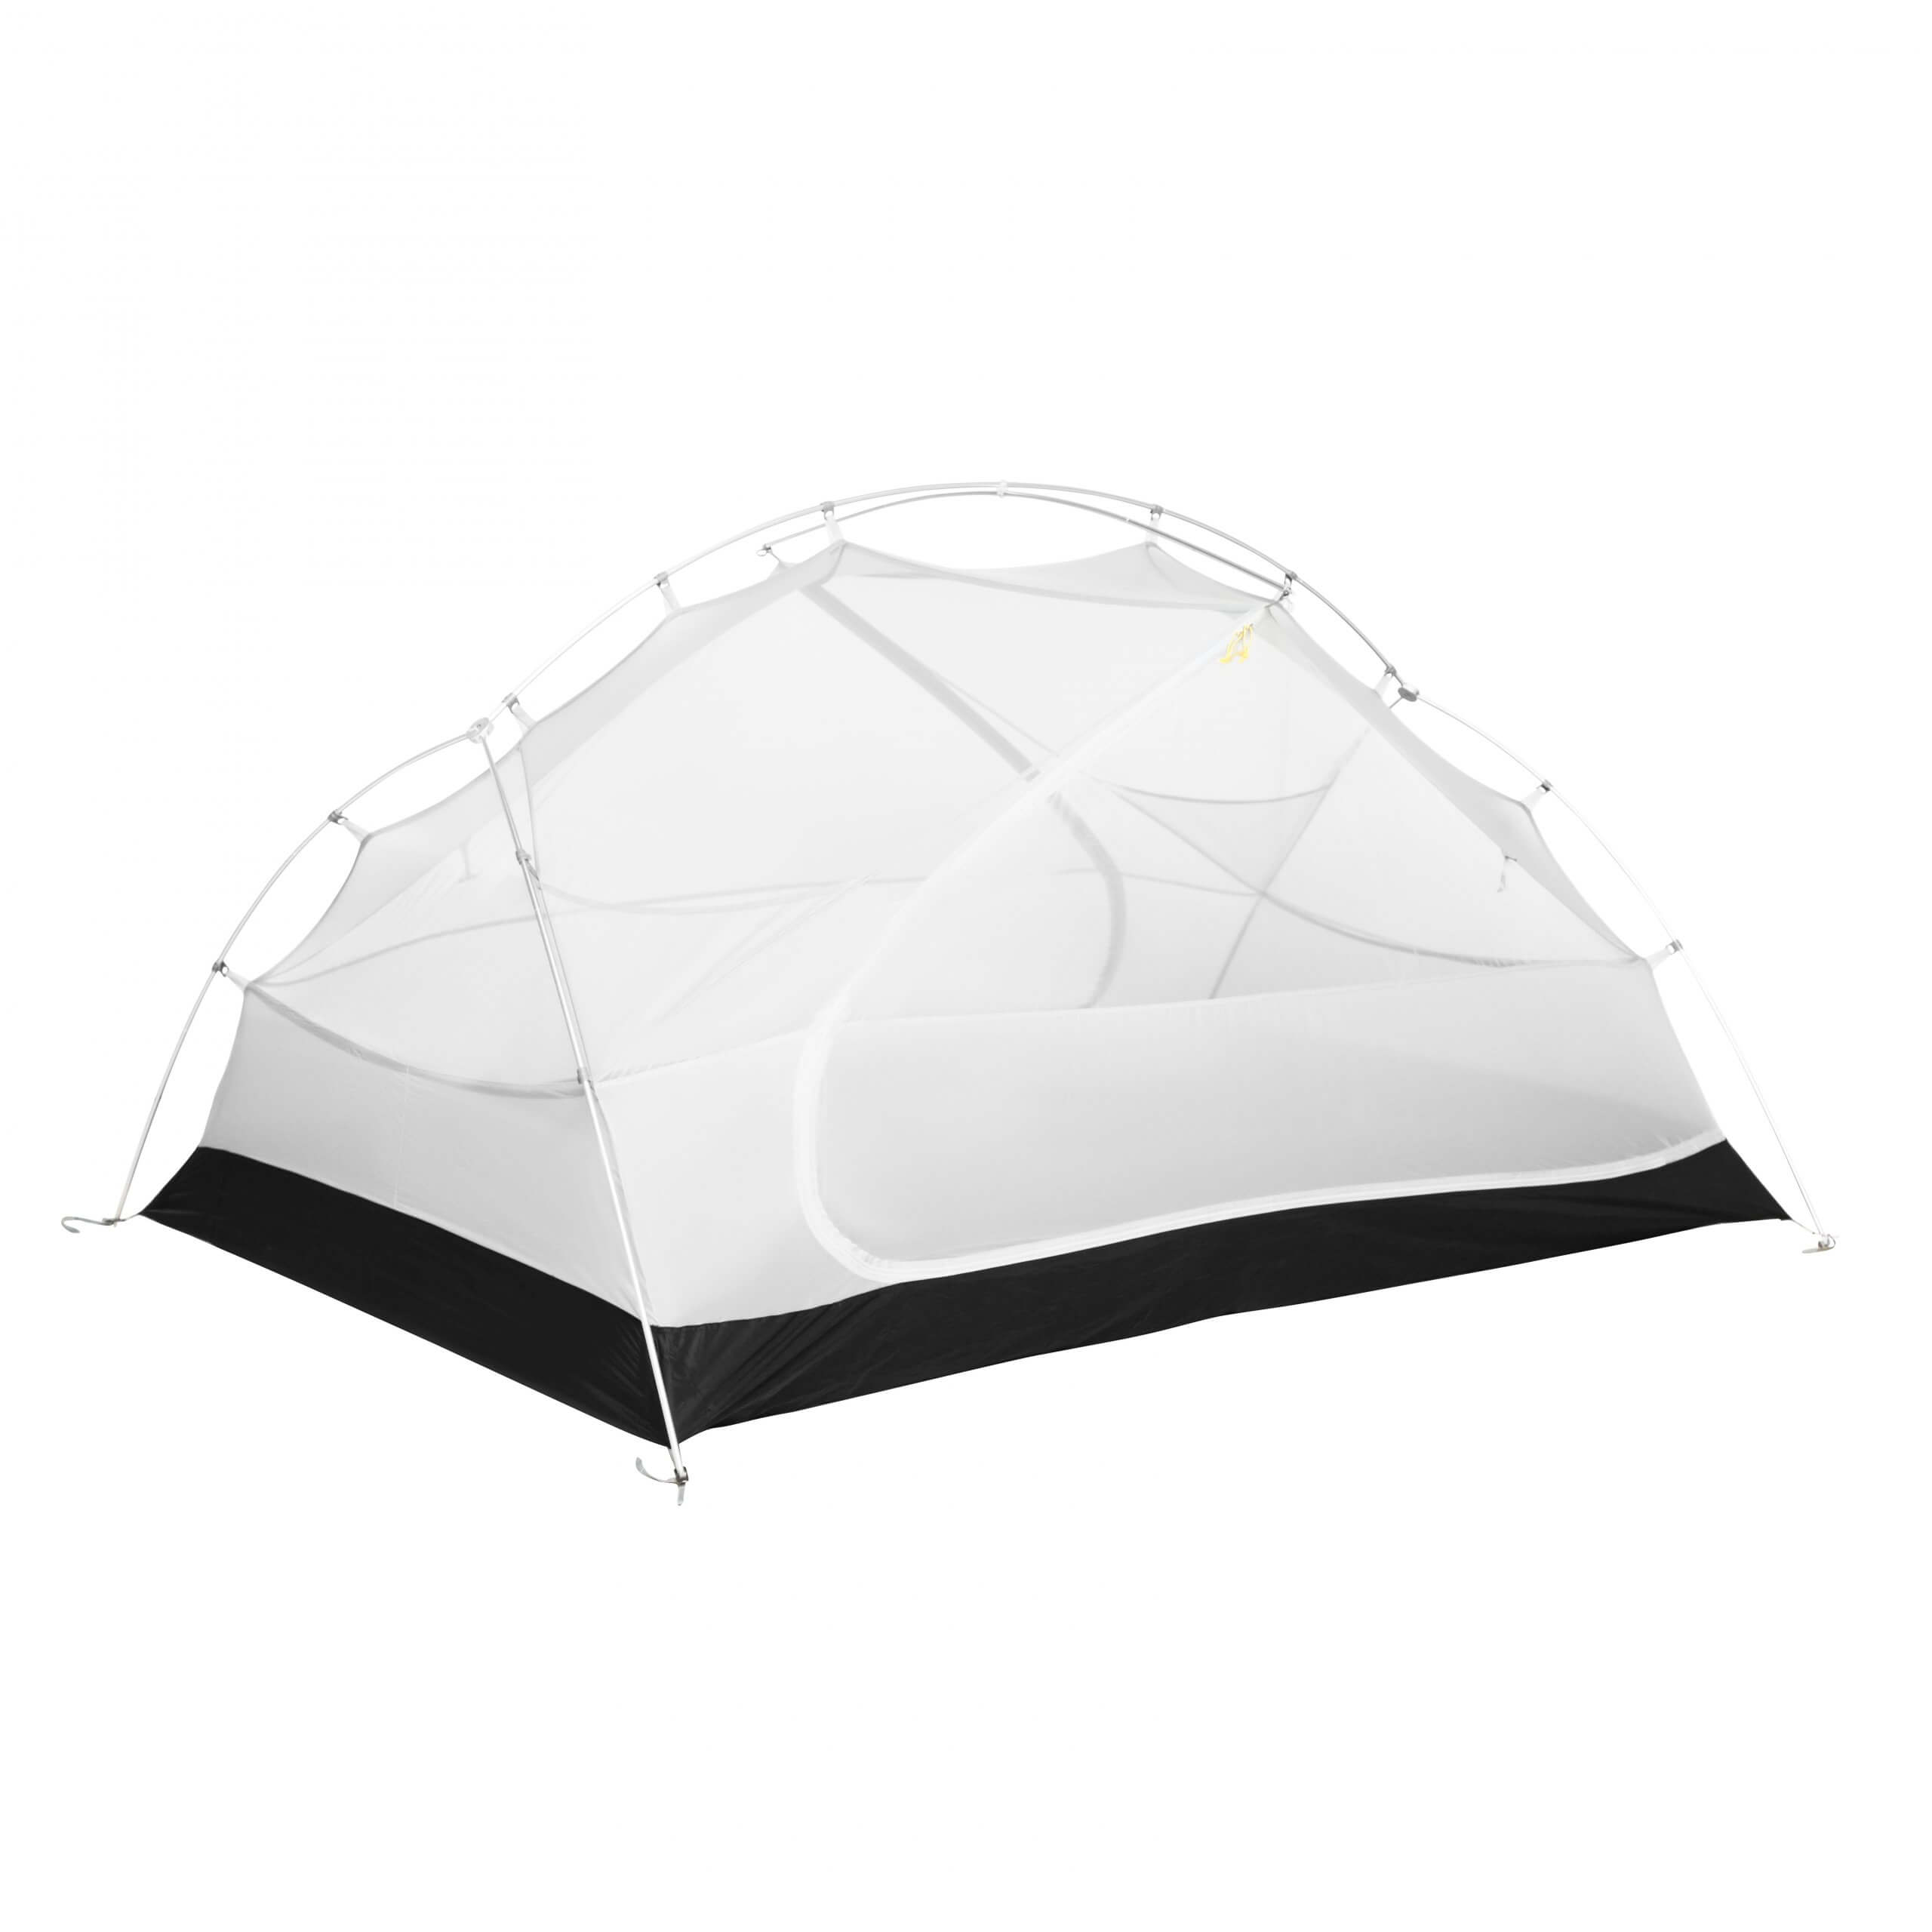 Double Layer Nylon Tent